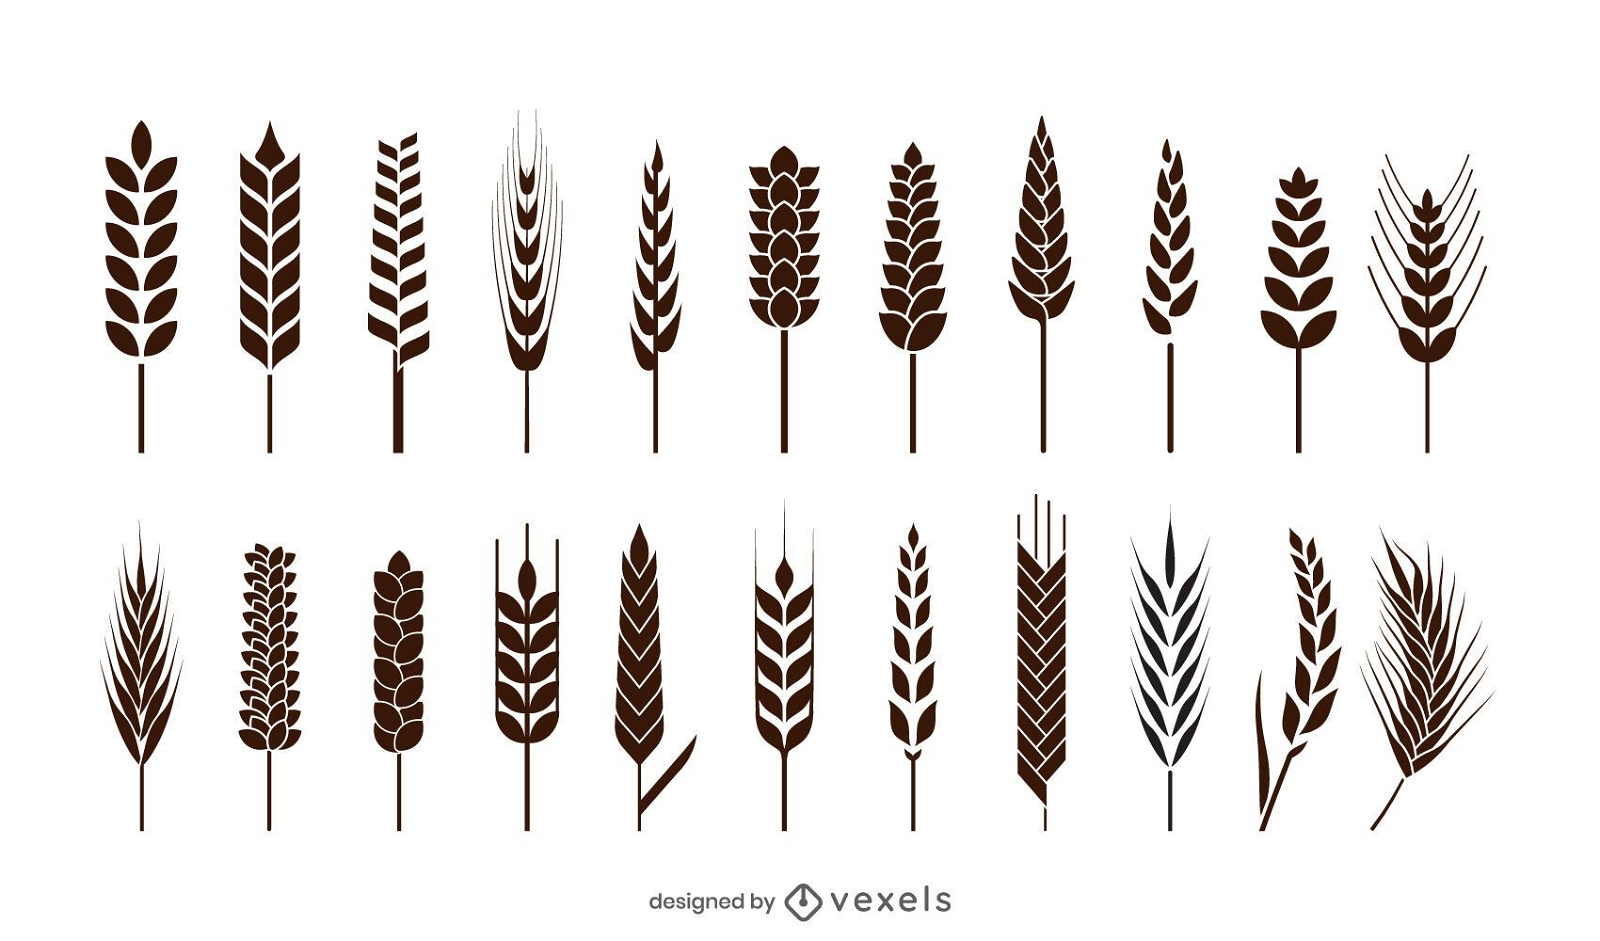 Wheat spikes icon set